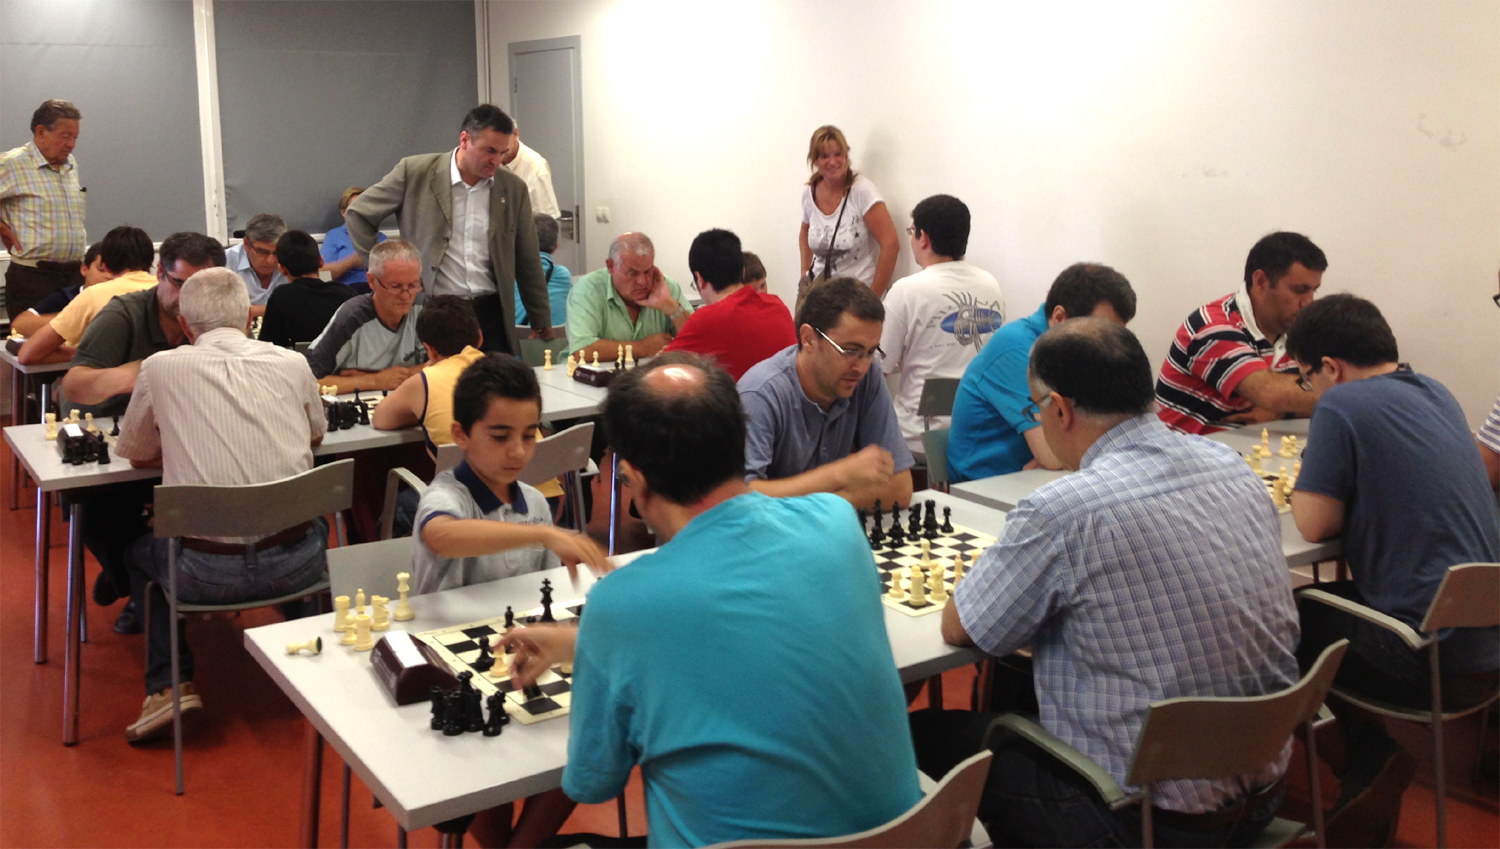 Torneig de rpides d'escacs, dissabte 20 de juliol, a la Biblioteca